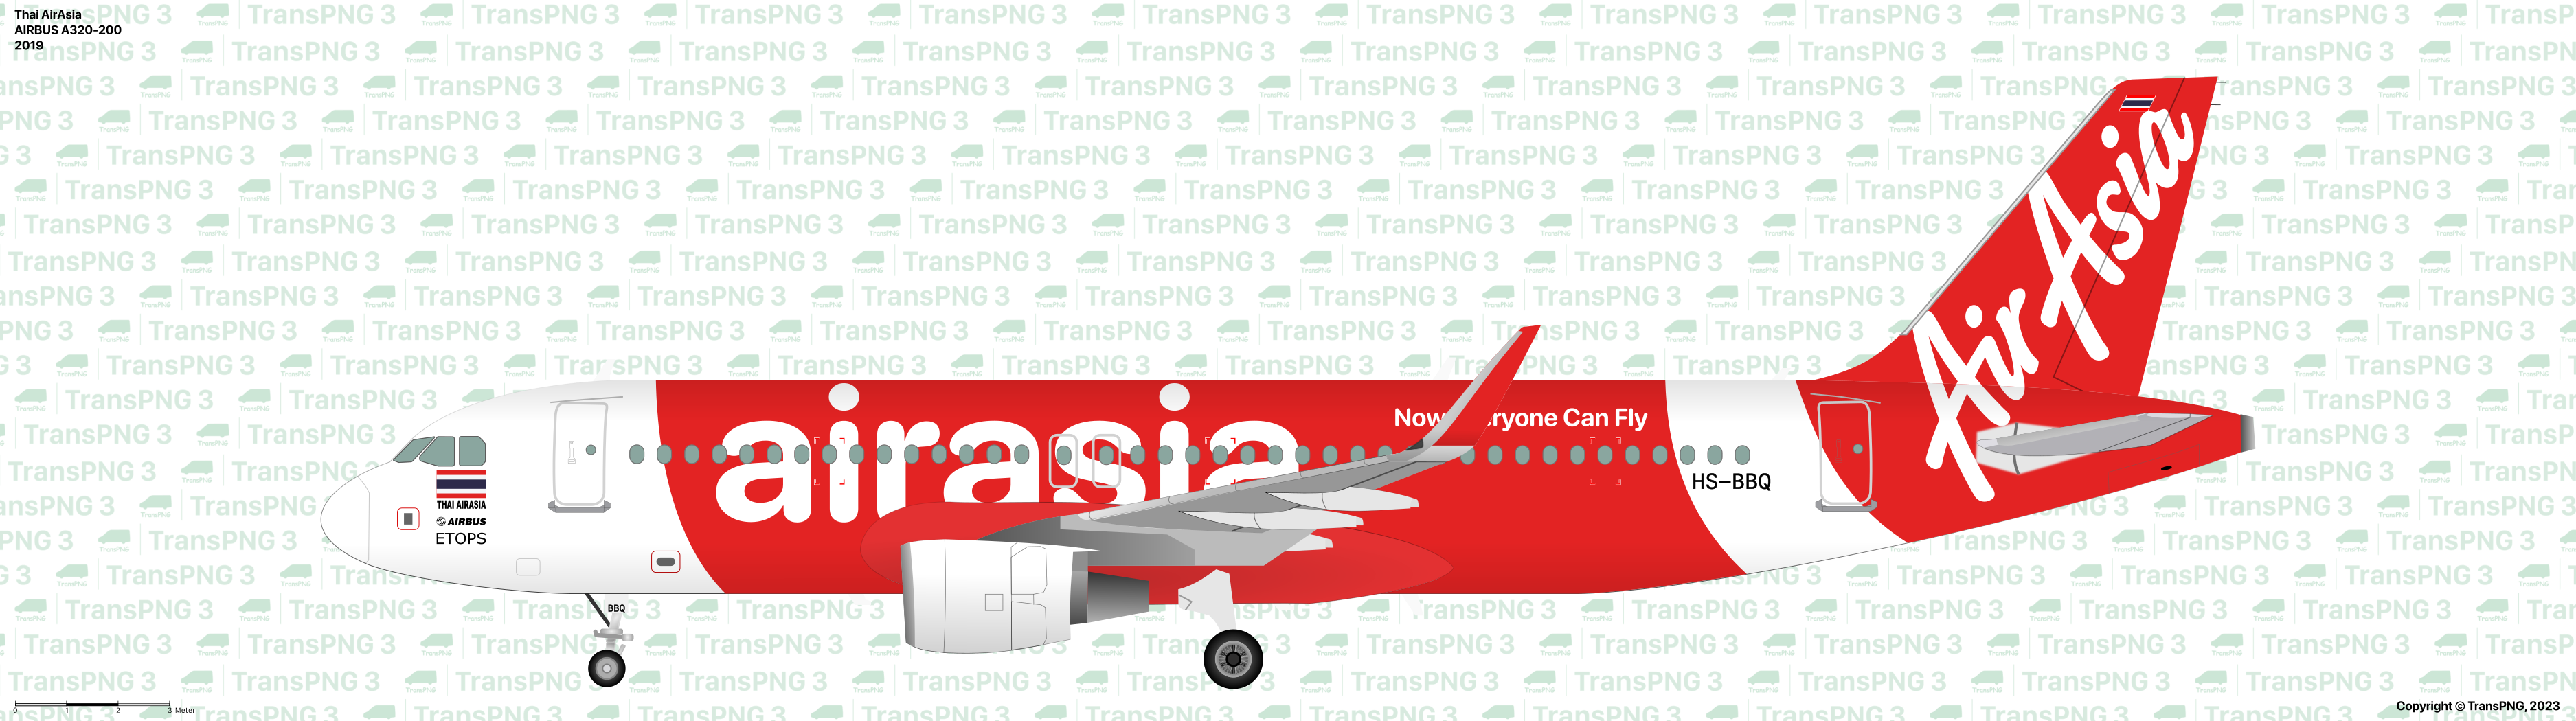 TransPNG | 分享世界各地多種交通工具的優秀繪圖 - 客機 53278940943_1f4699a2dd_o